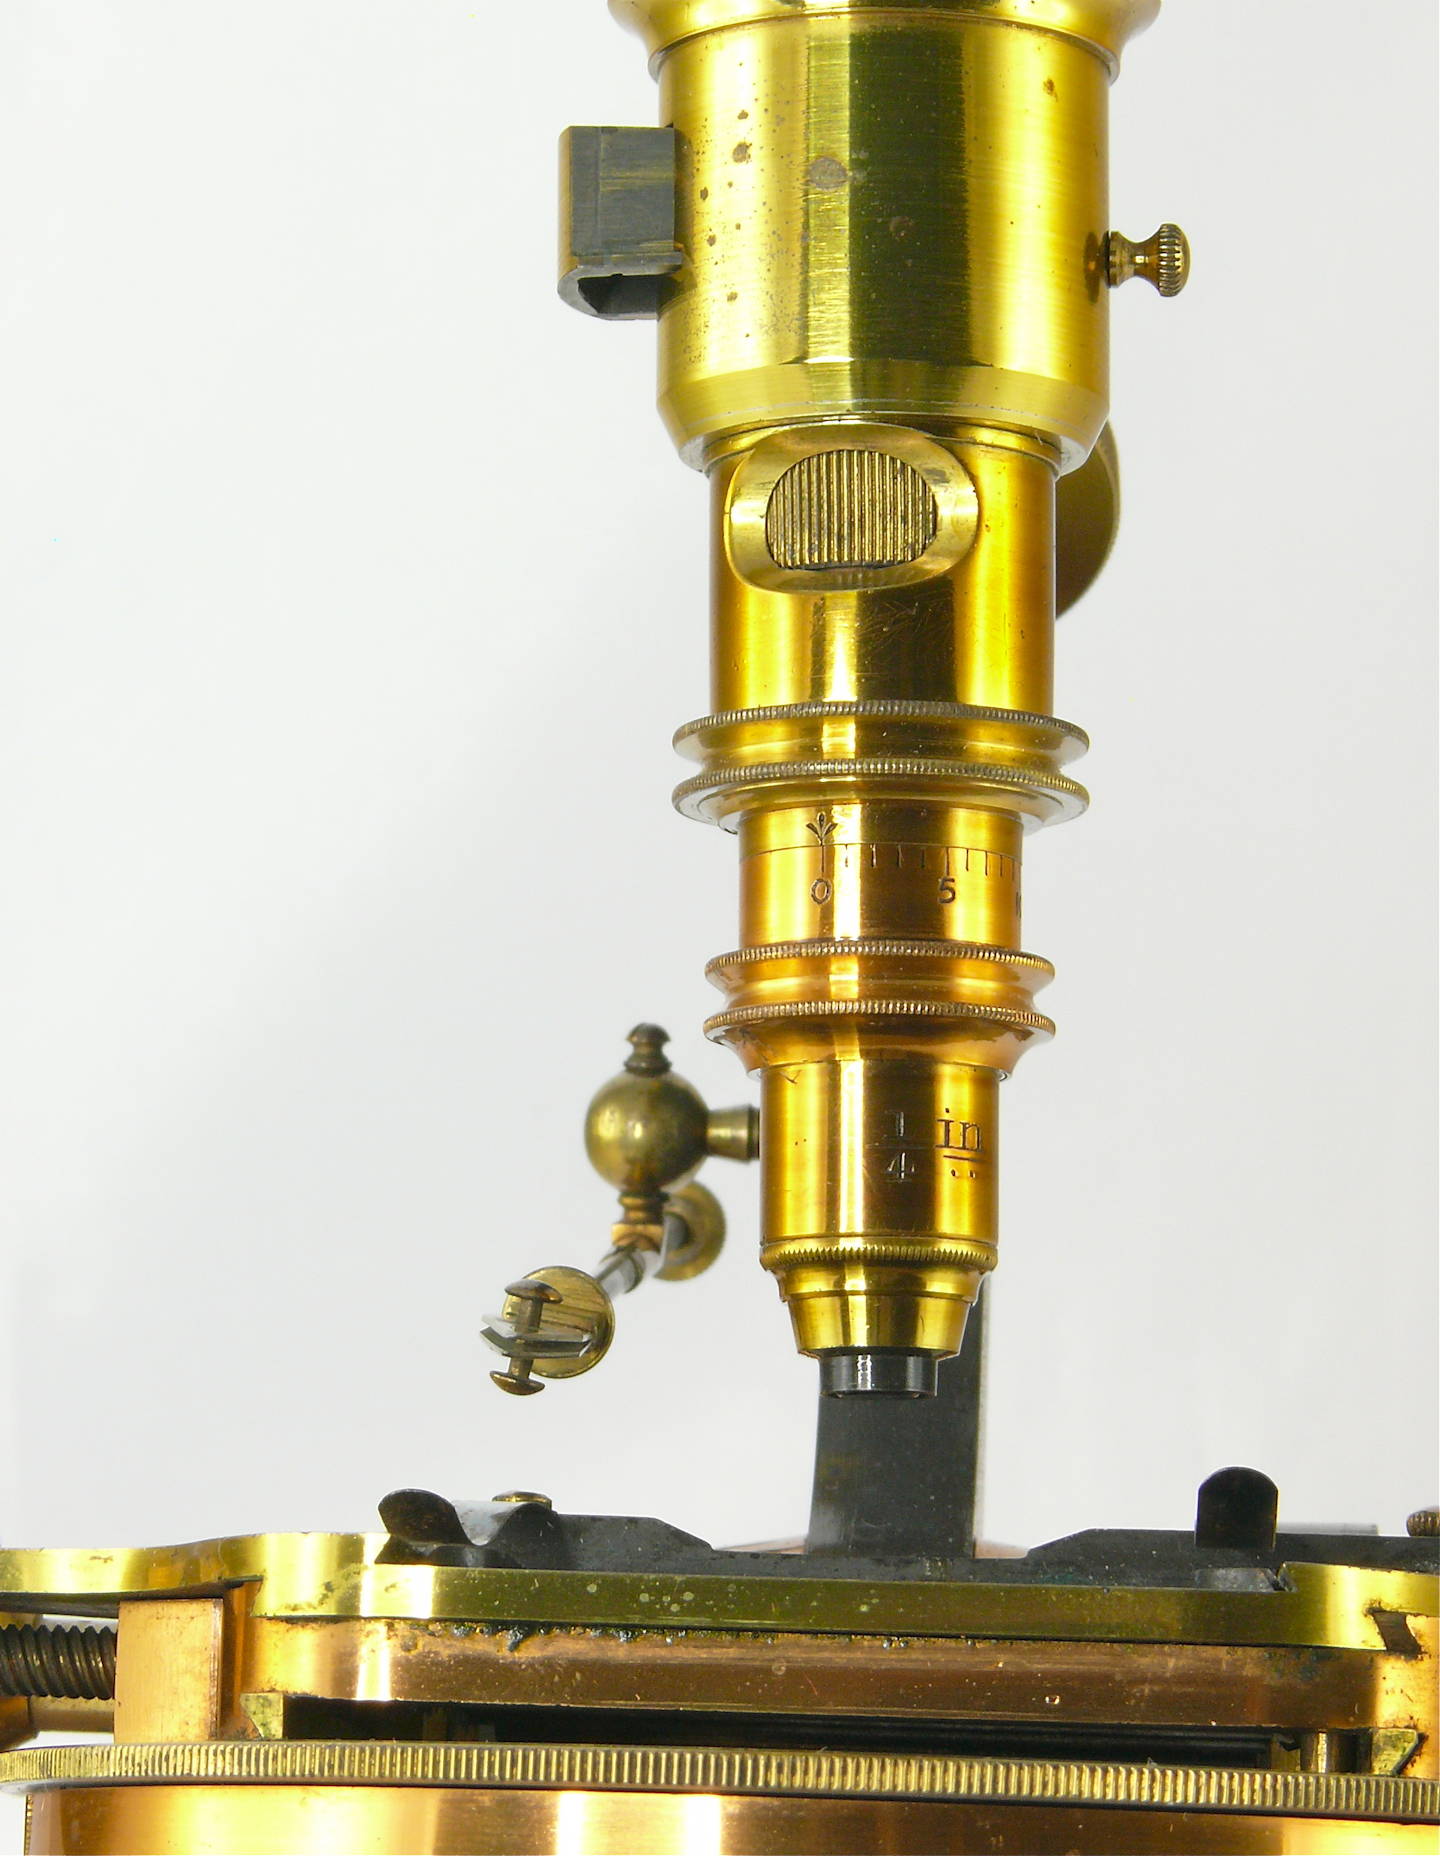 Microscope composé binoculaire
(à polarisation)